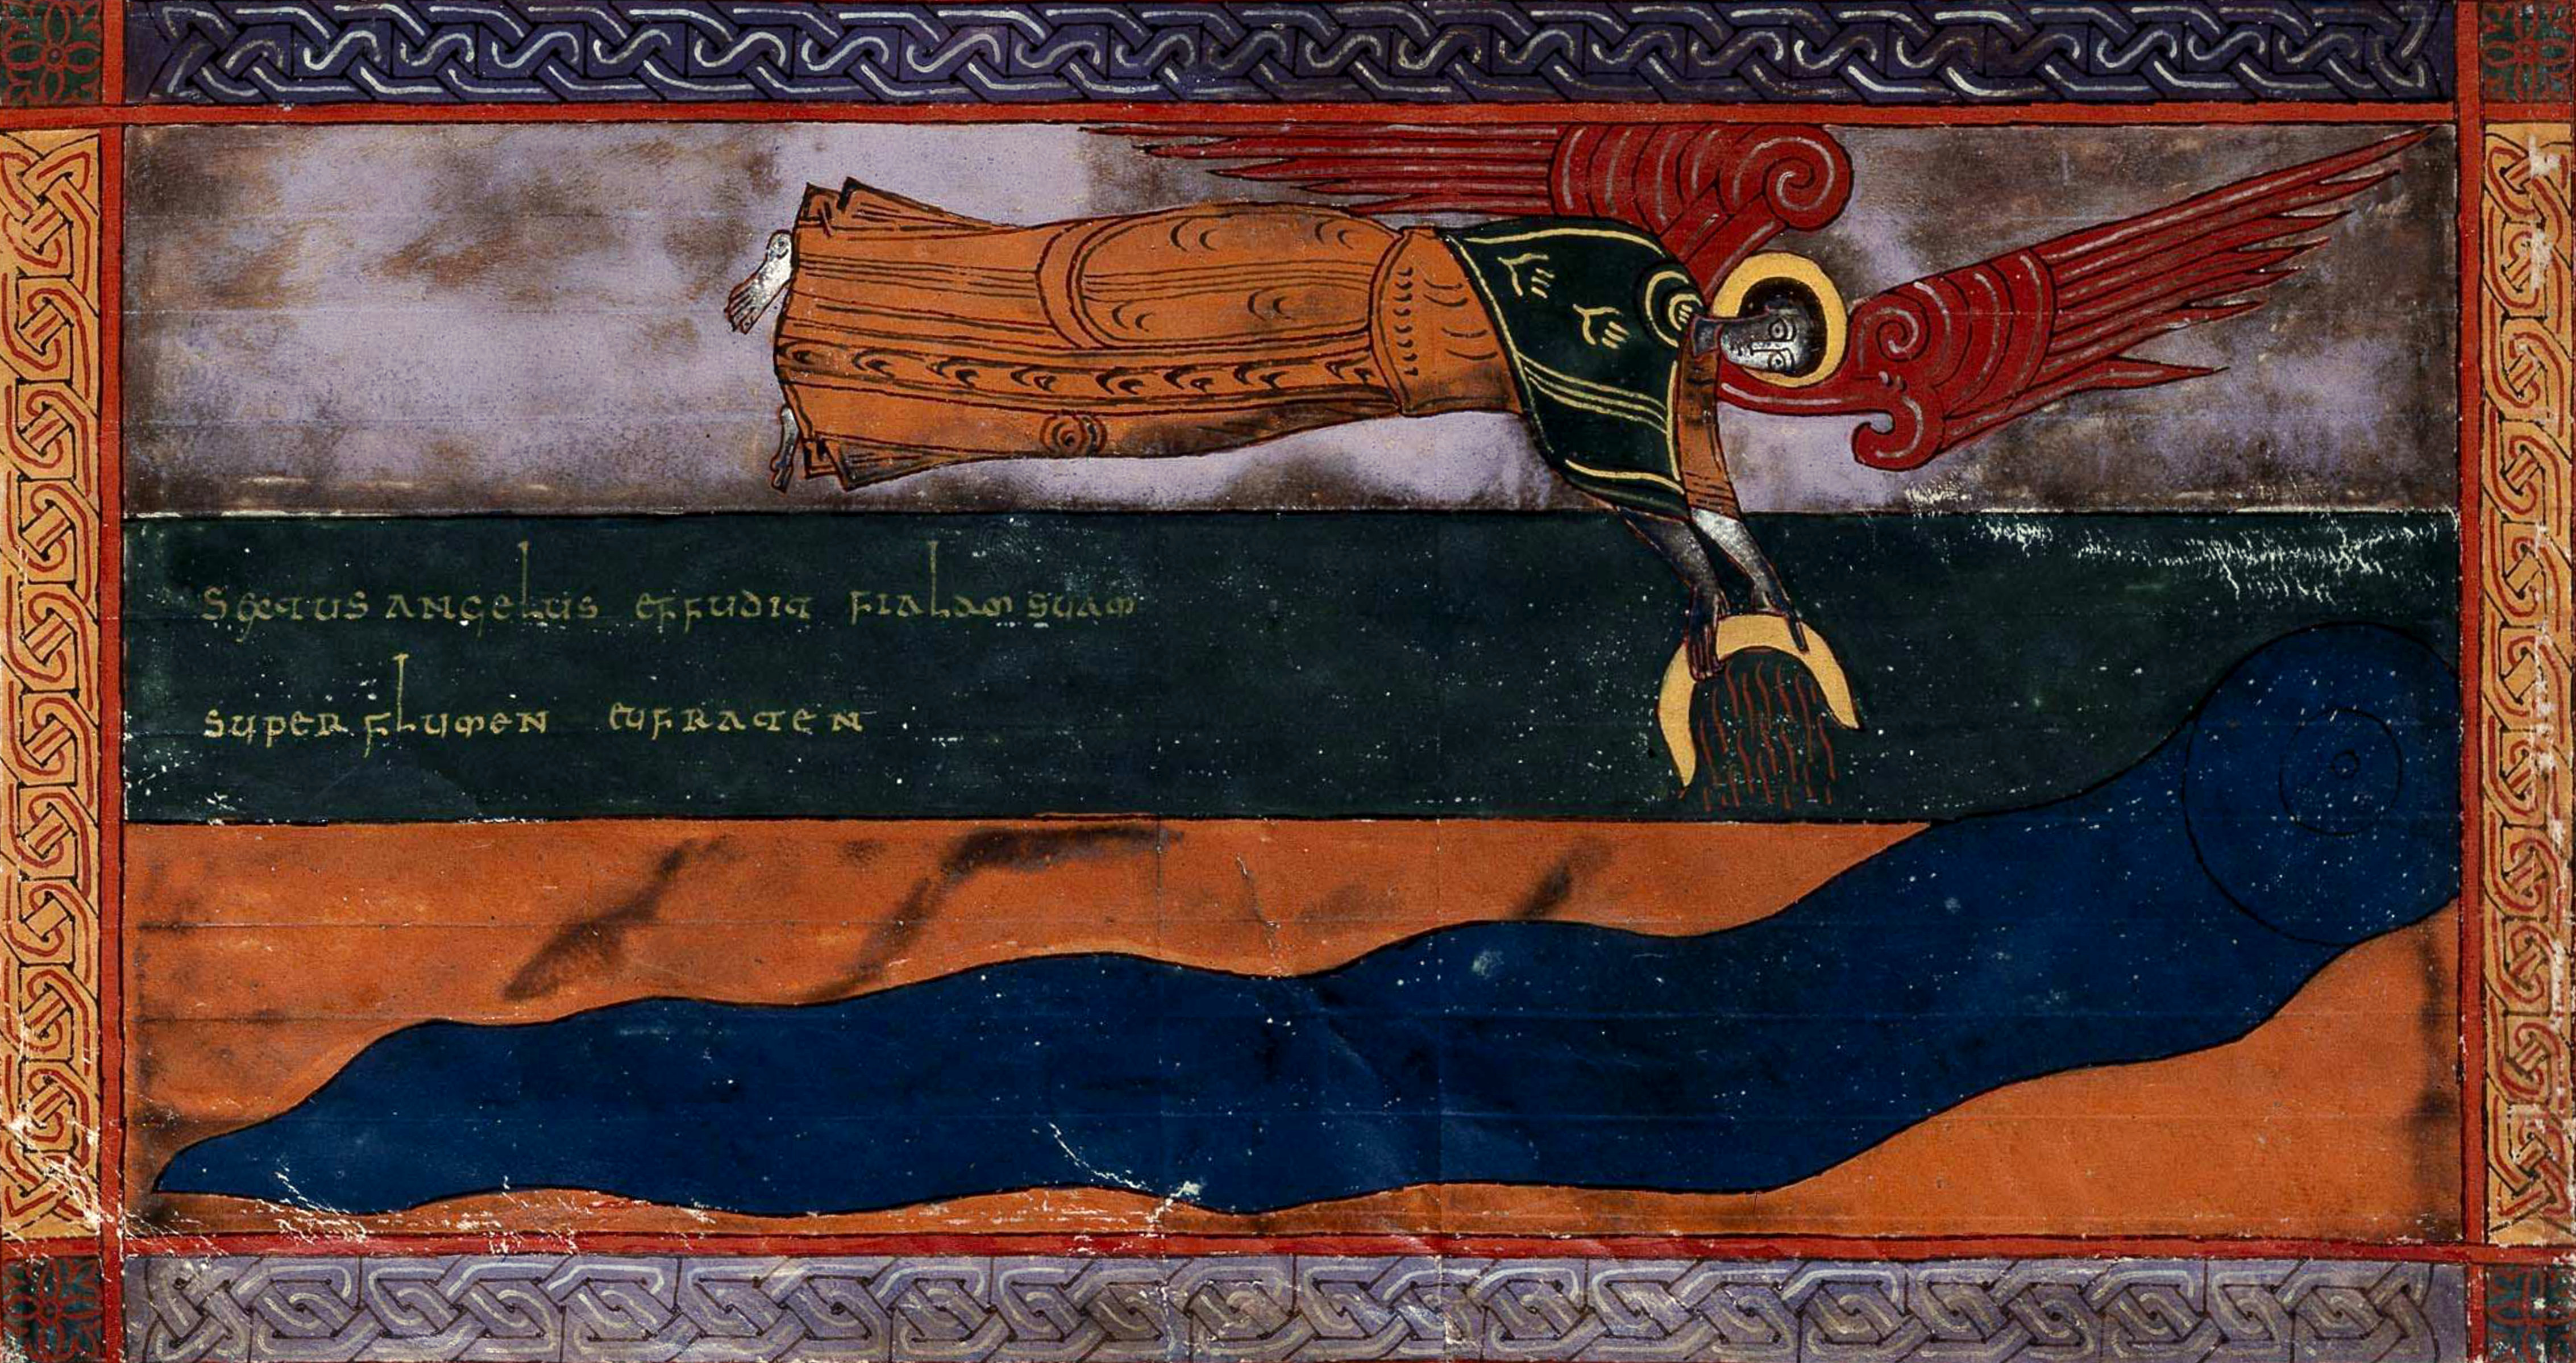 Beatus de Facundus, p. 439 – La sixième coupe répandue sur le fleuve Euphrate, provoquant l’assèchement du fleuve et permettant le passage des rois de l’Orient (Ap 16, 12).